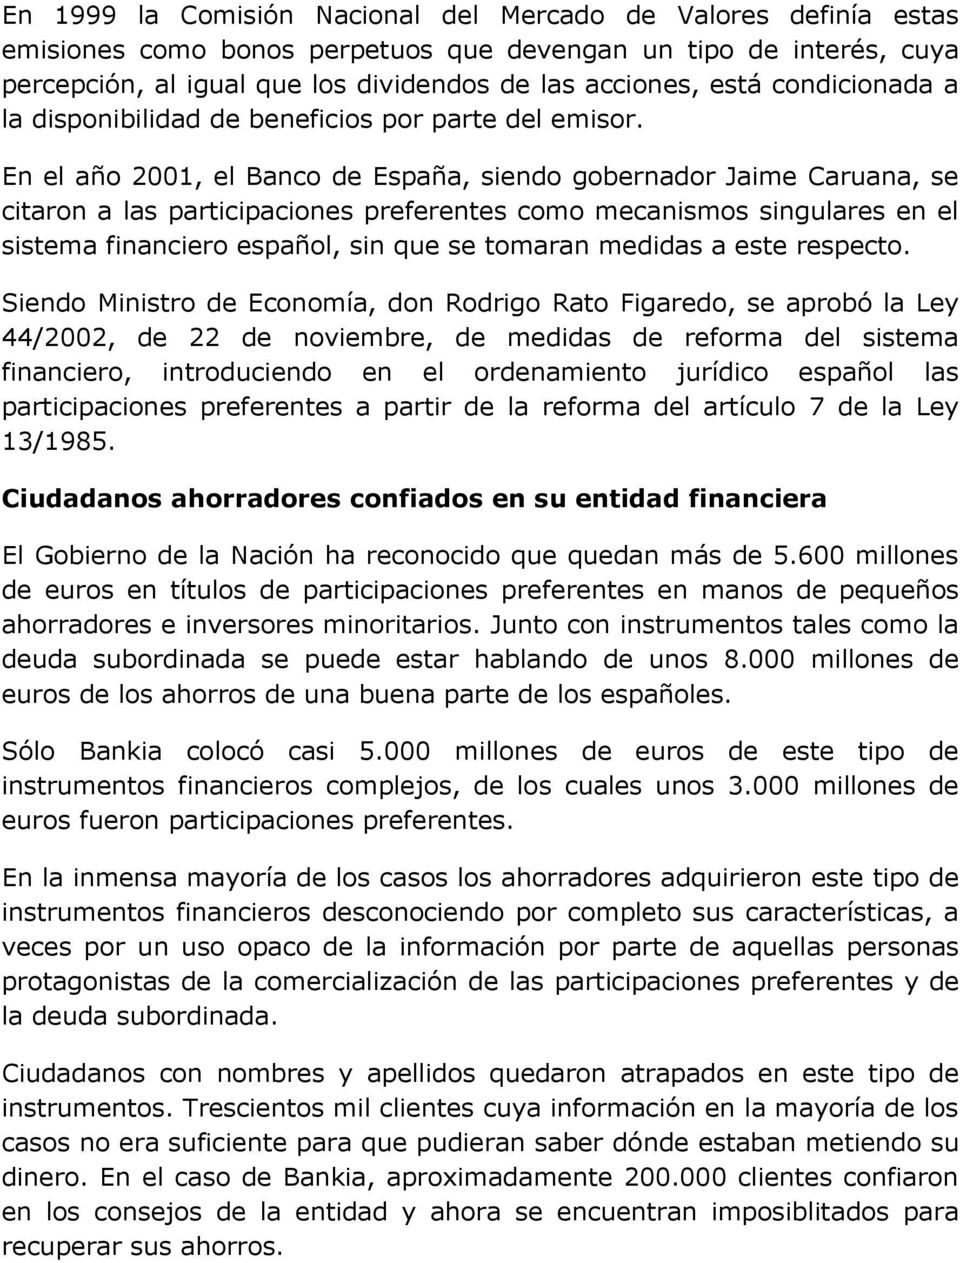 En el año 2001, el Banco de España, siendo gobernador Jaime Caruana, se citaron a las participaciones preferentes como mecanismos singulares en el sistema financiero español, sin que se tomaran